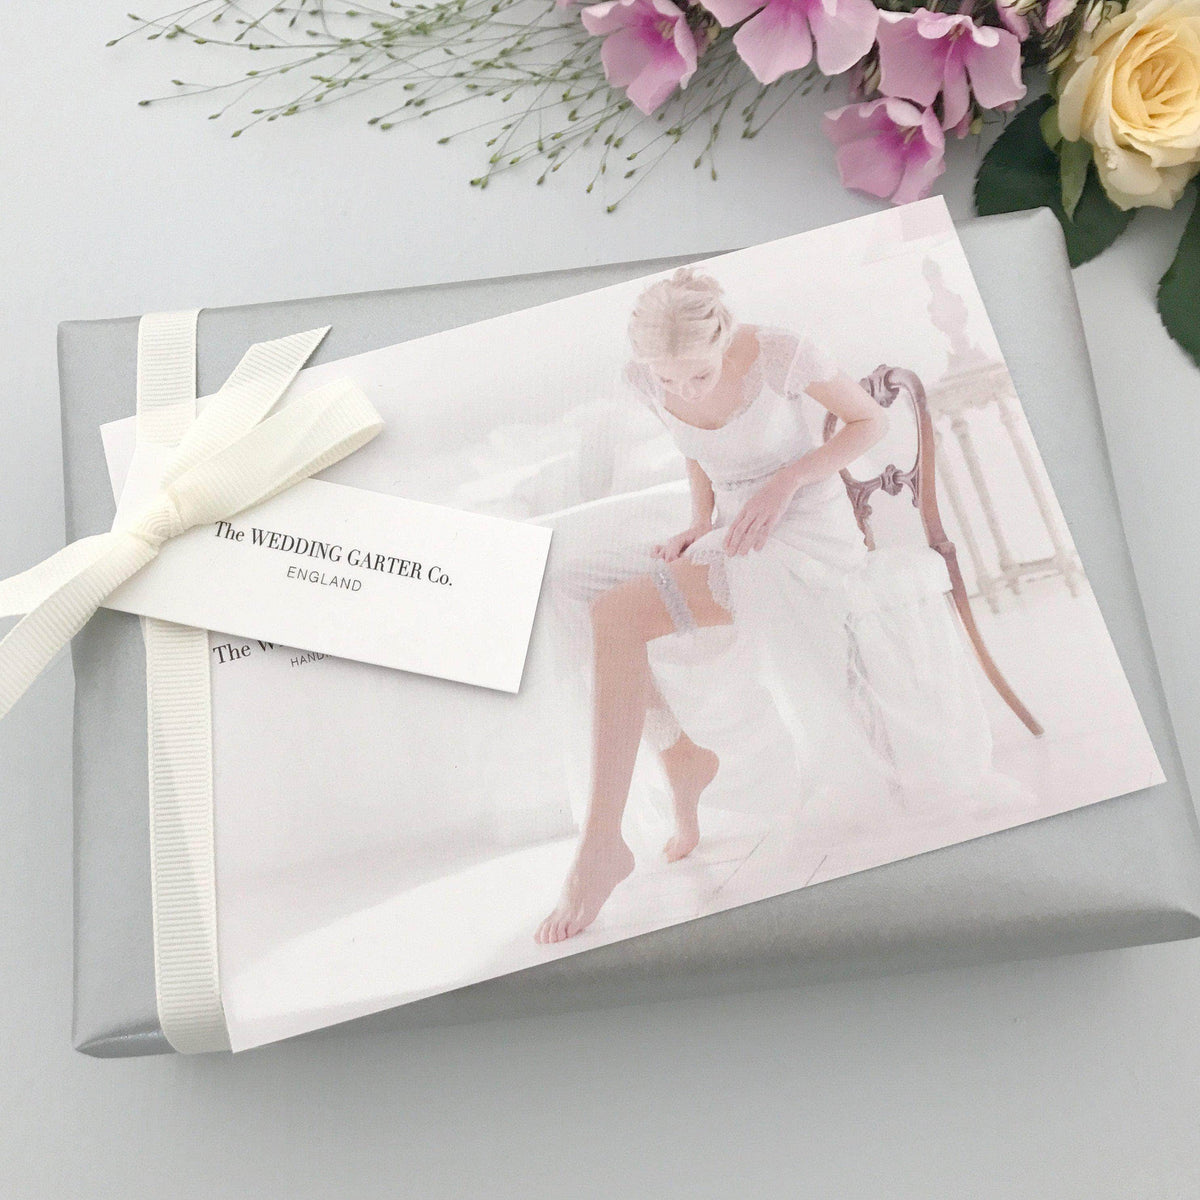 Wedding Garter Bridal garter set - Super sleek lace leaf wedding garter and matching toss garter - &#39;Juniper&#39;